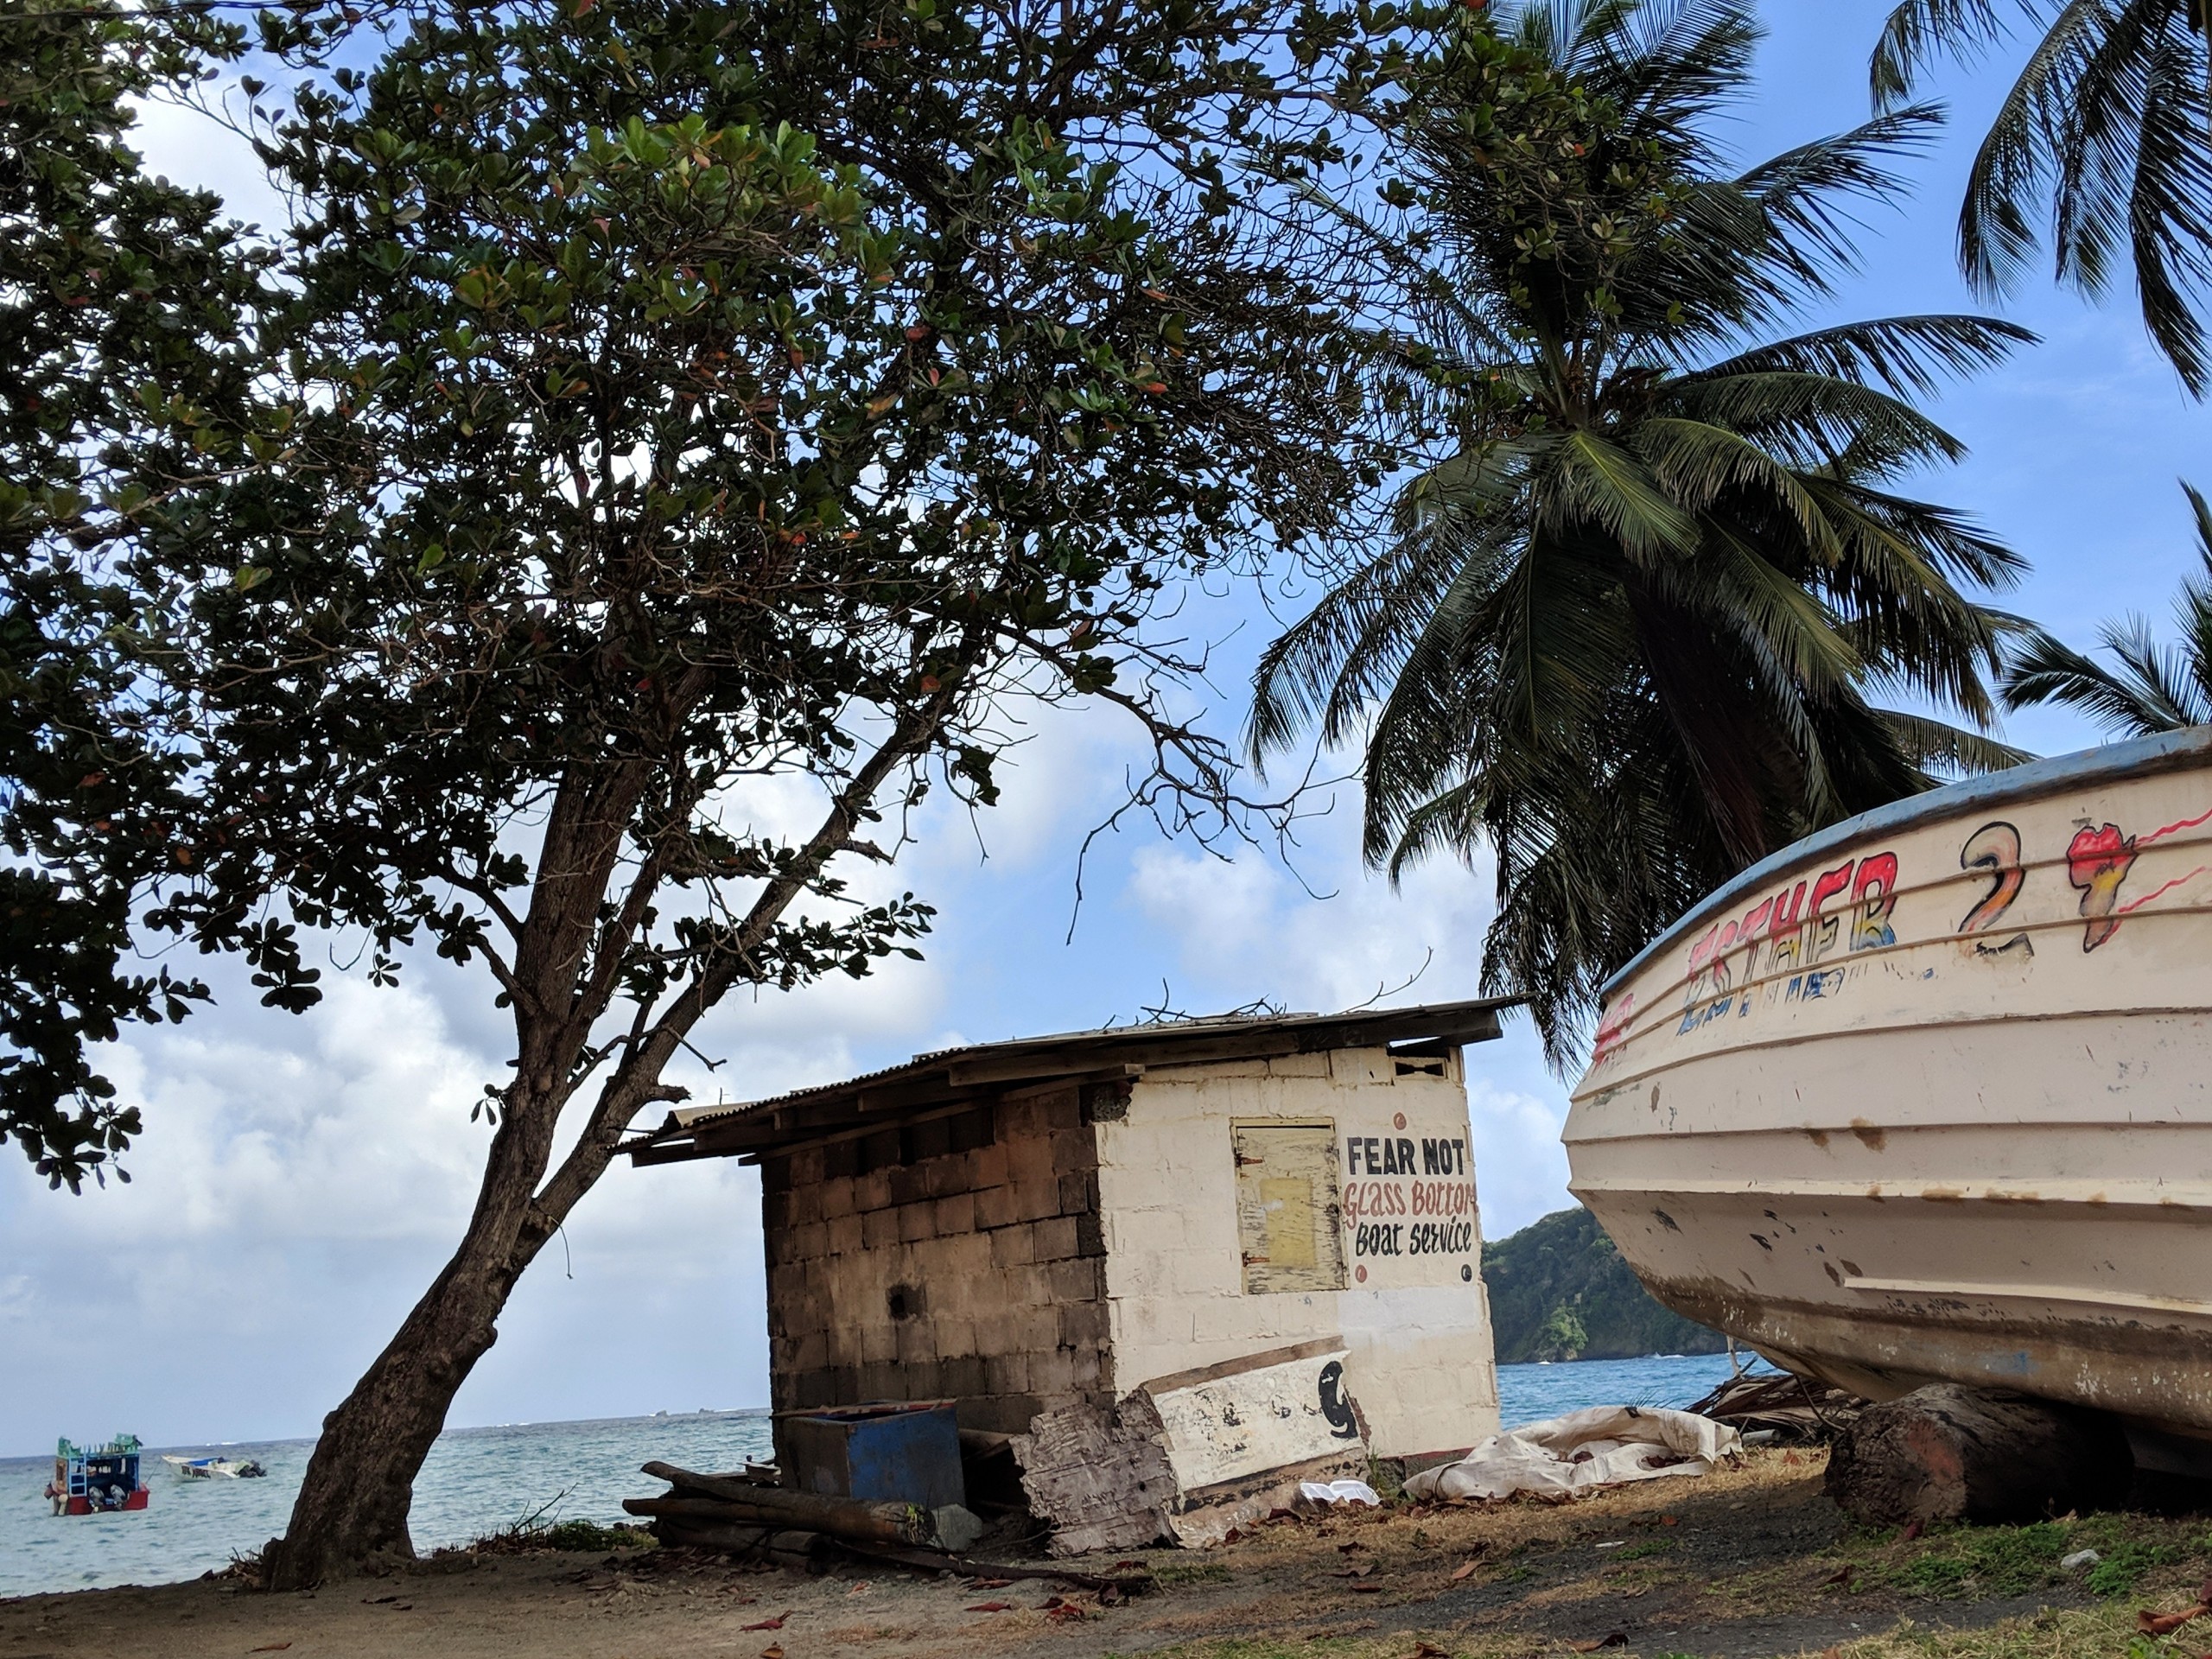 Allie VanBenschoten - Tobago - Scenes from Around the World - Beach with boat